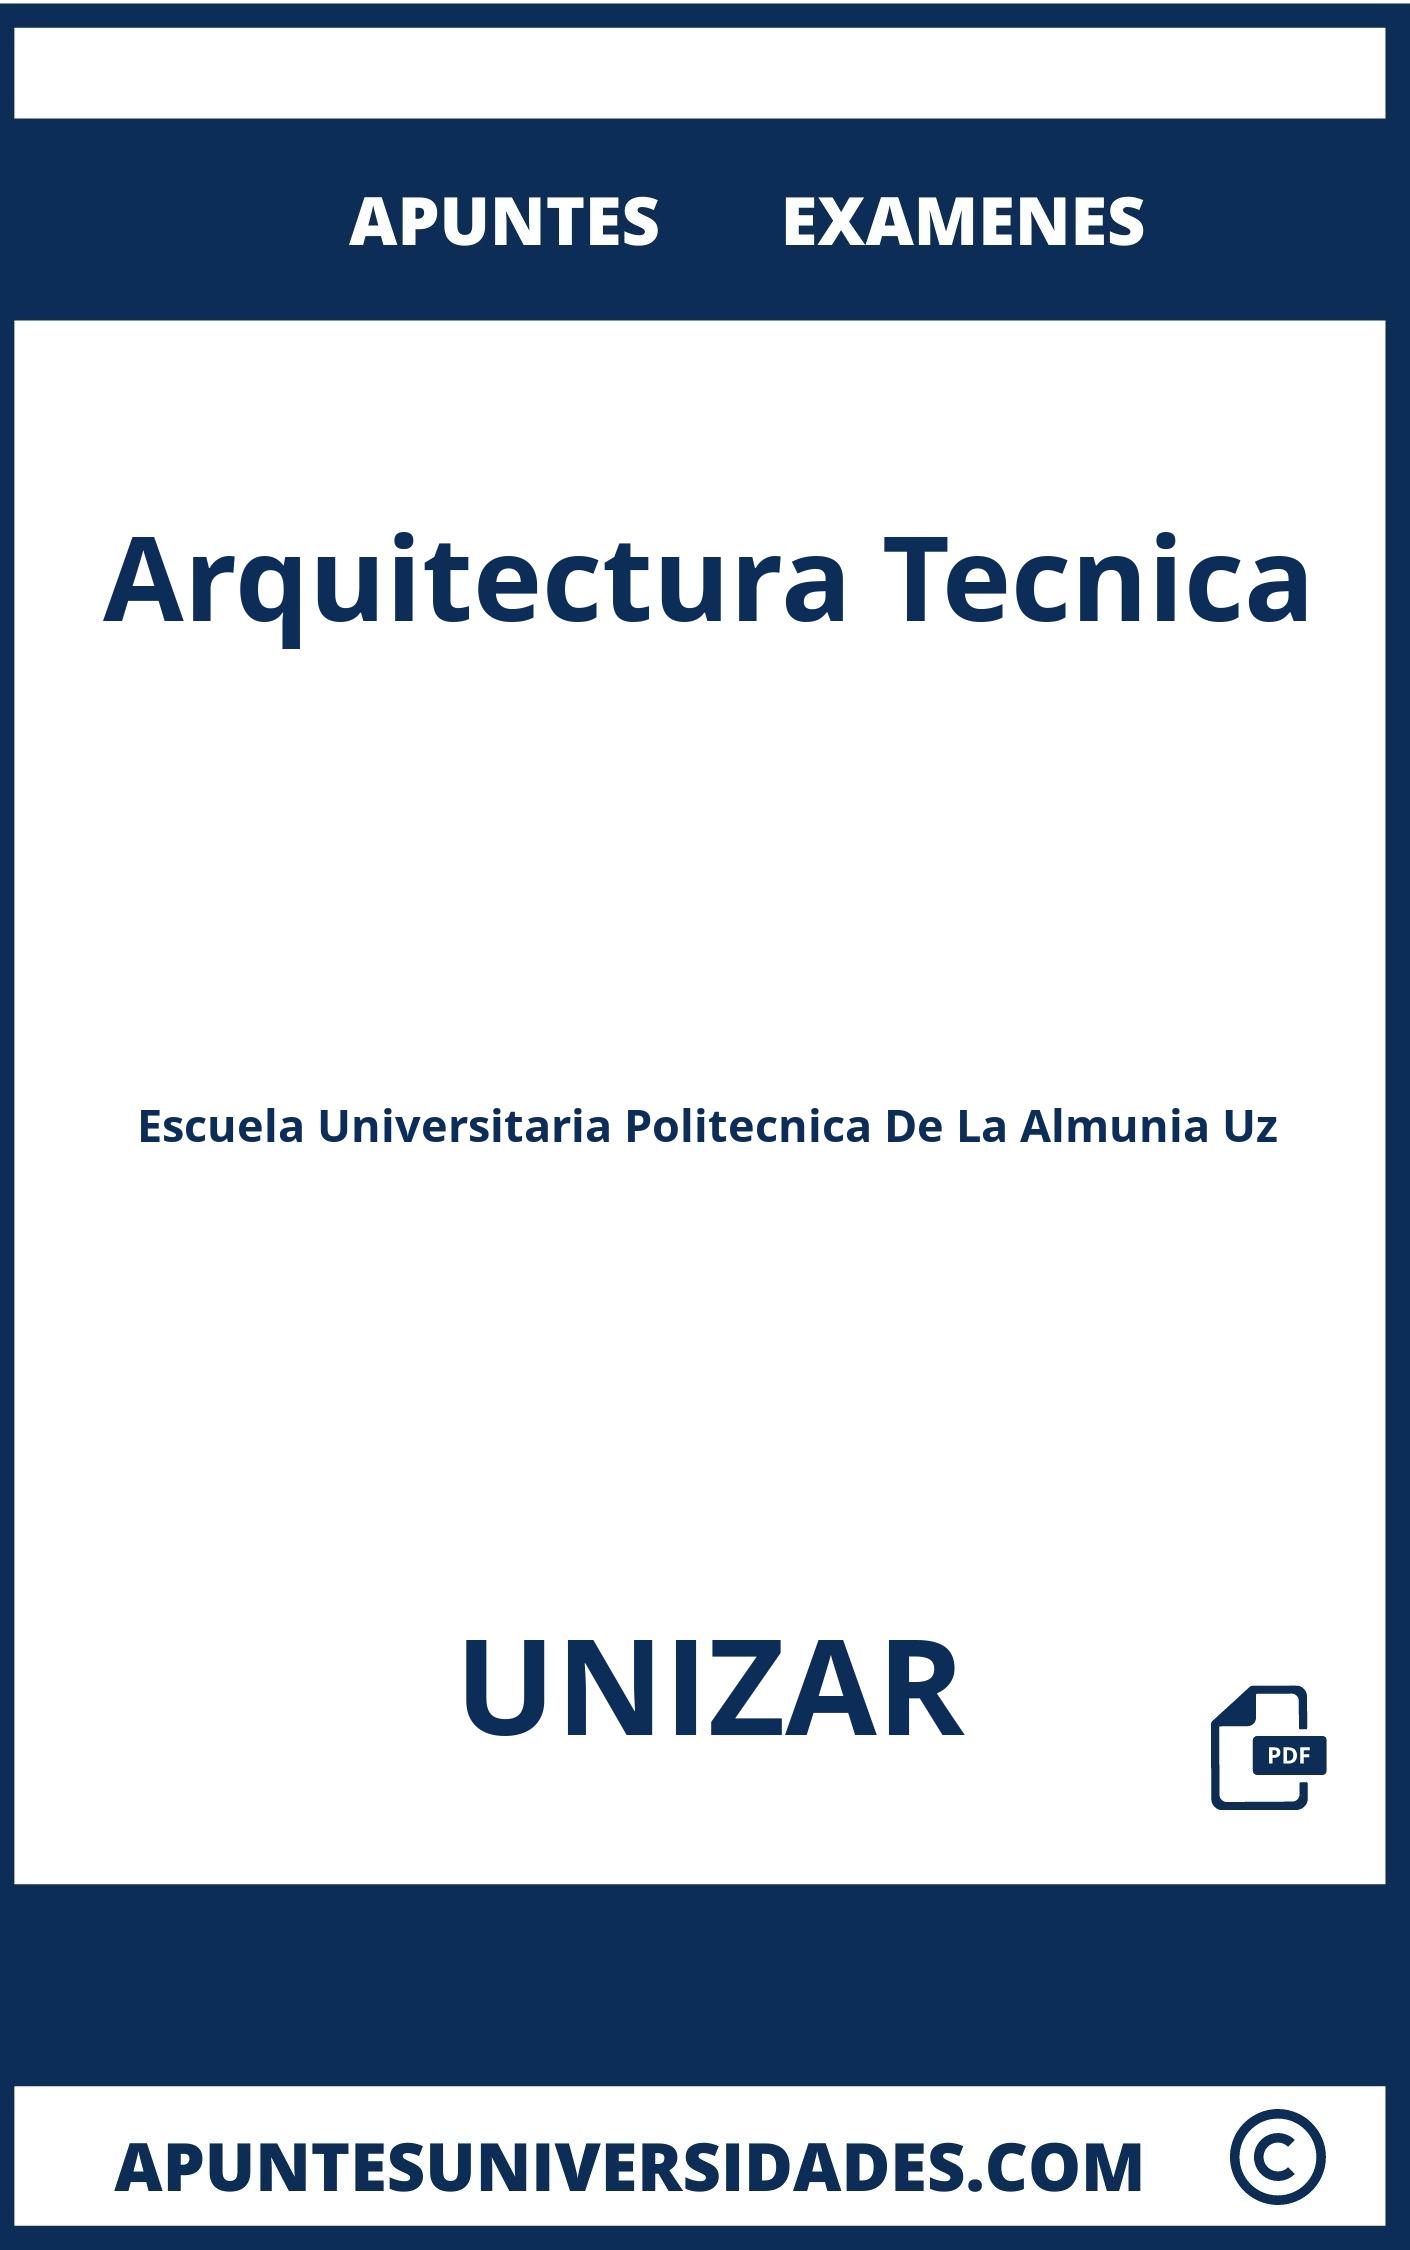 Examenes Arquitectura Tecnica UNIZAR y Apuntes